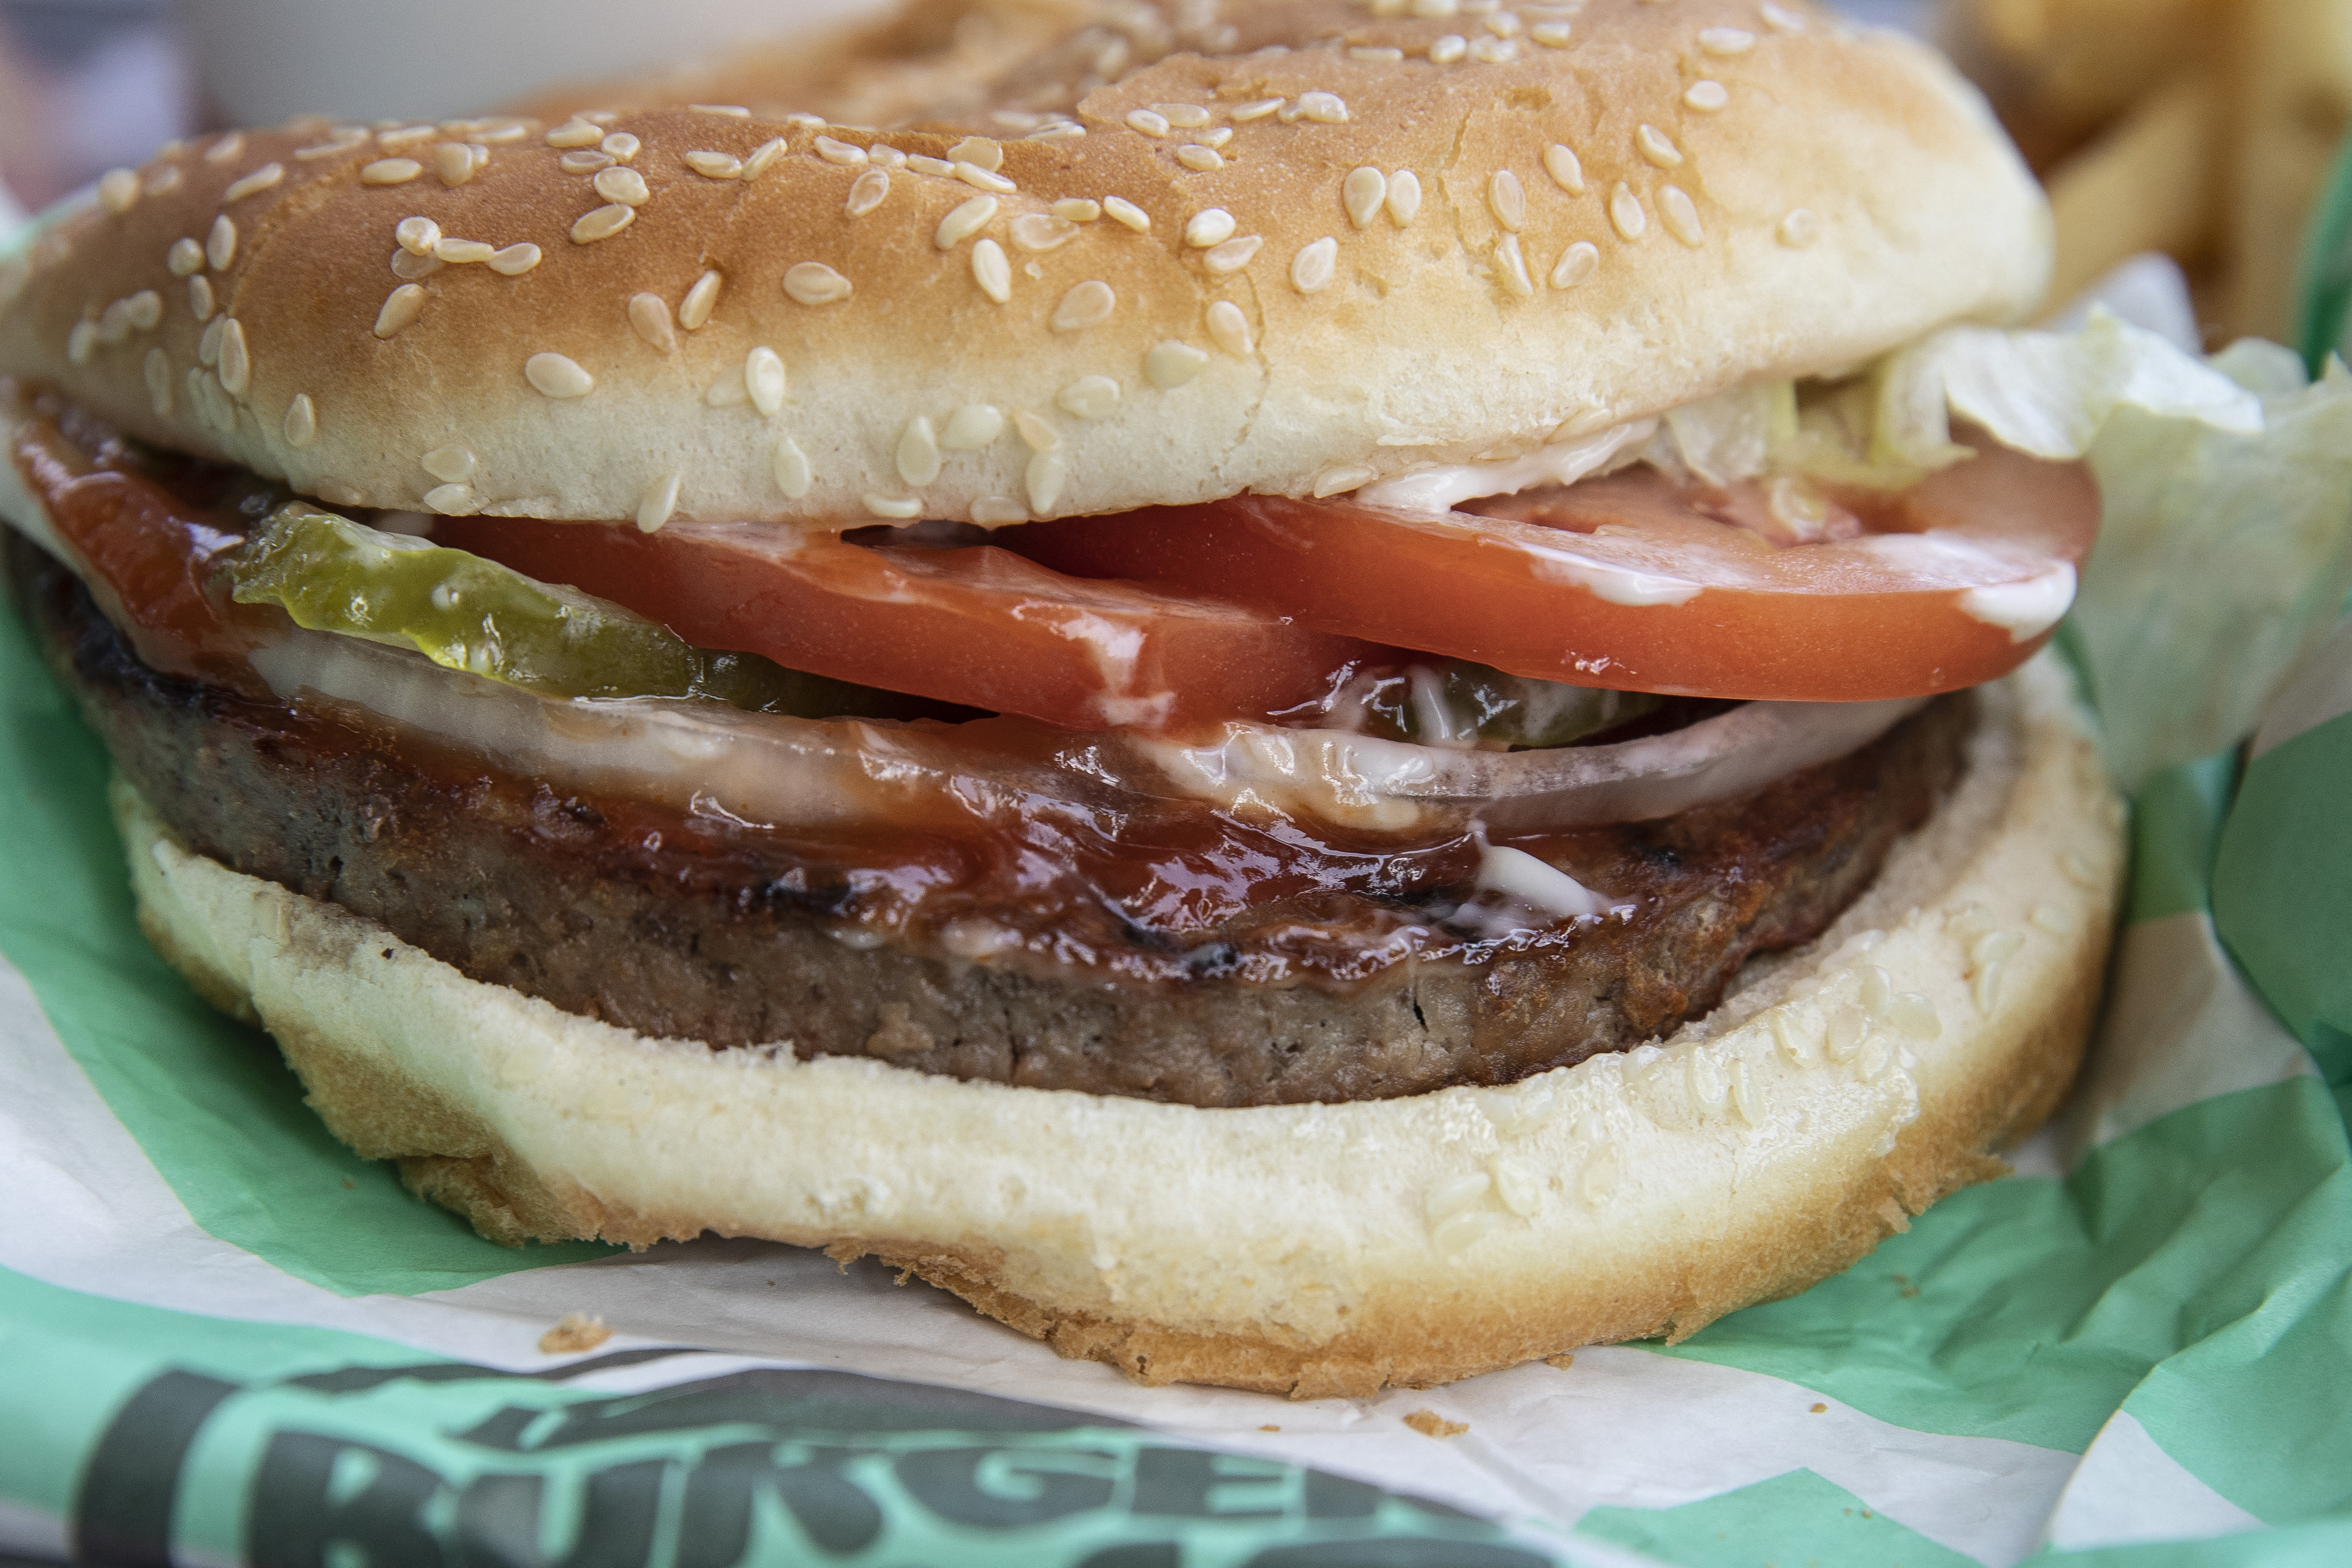 Beperelték a Burger Kinget, mert a reklámokban nagyobbnak tűnnek a burgereik mint a valóságban